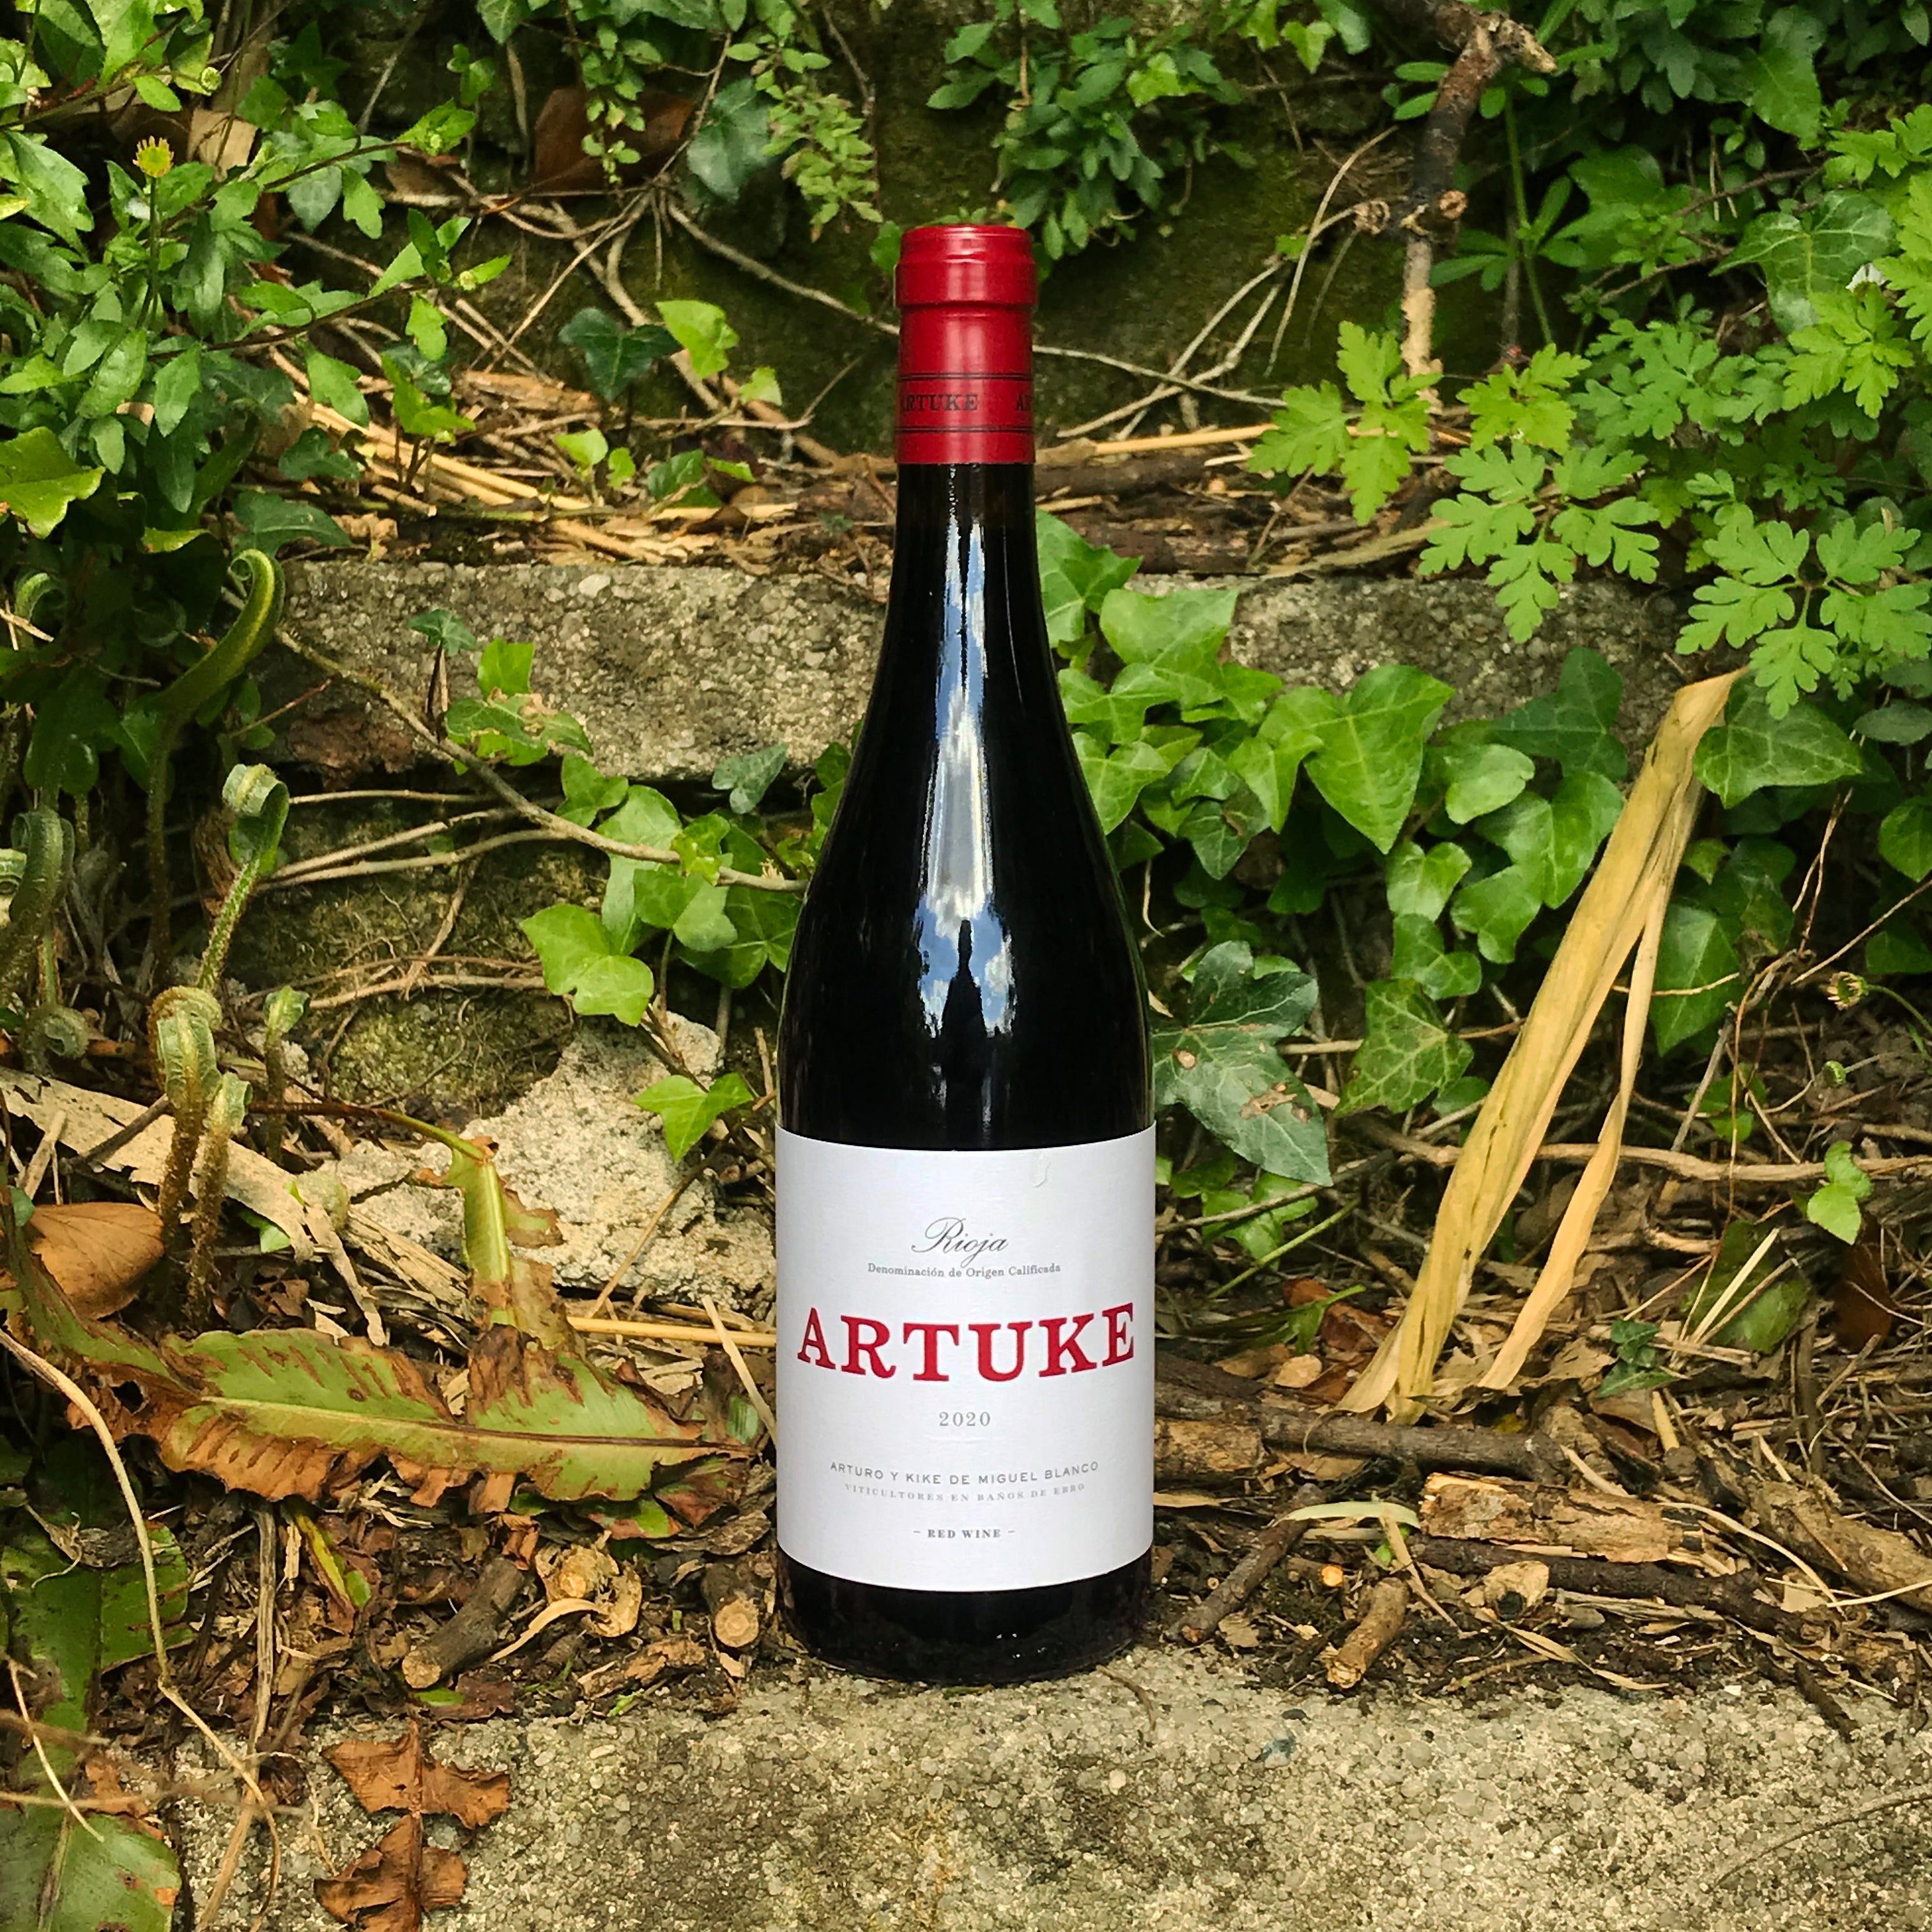 Artuke Rioja, Red Wine from Spain